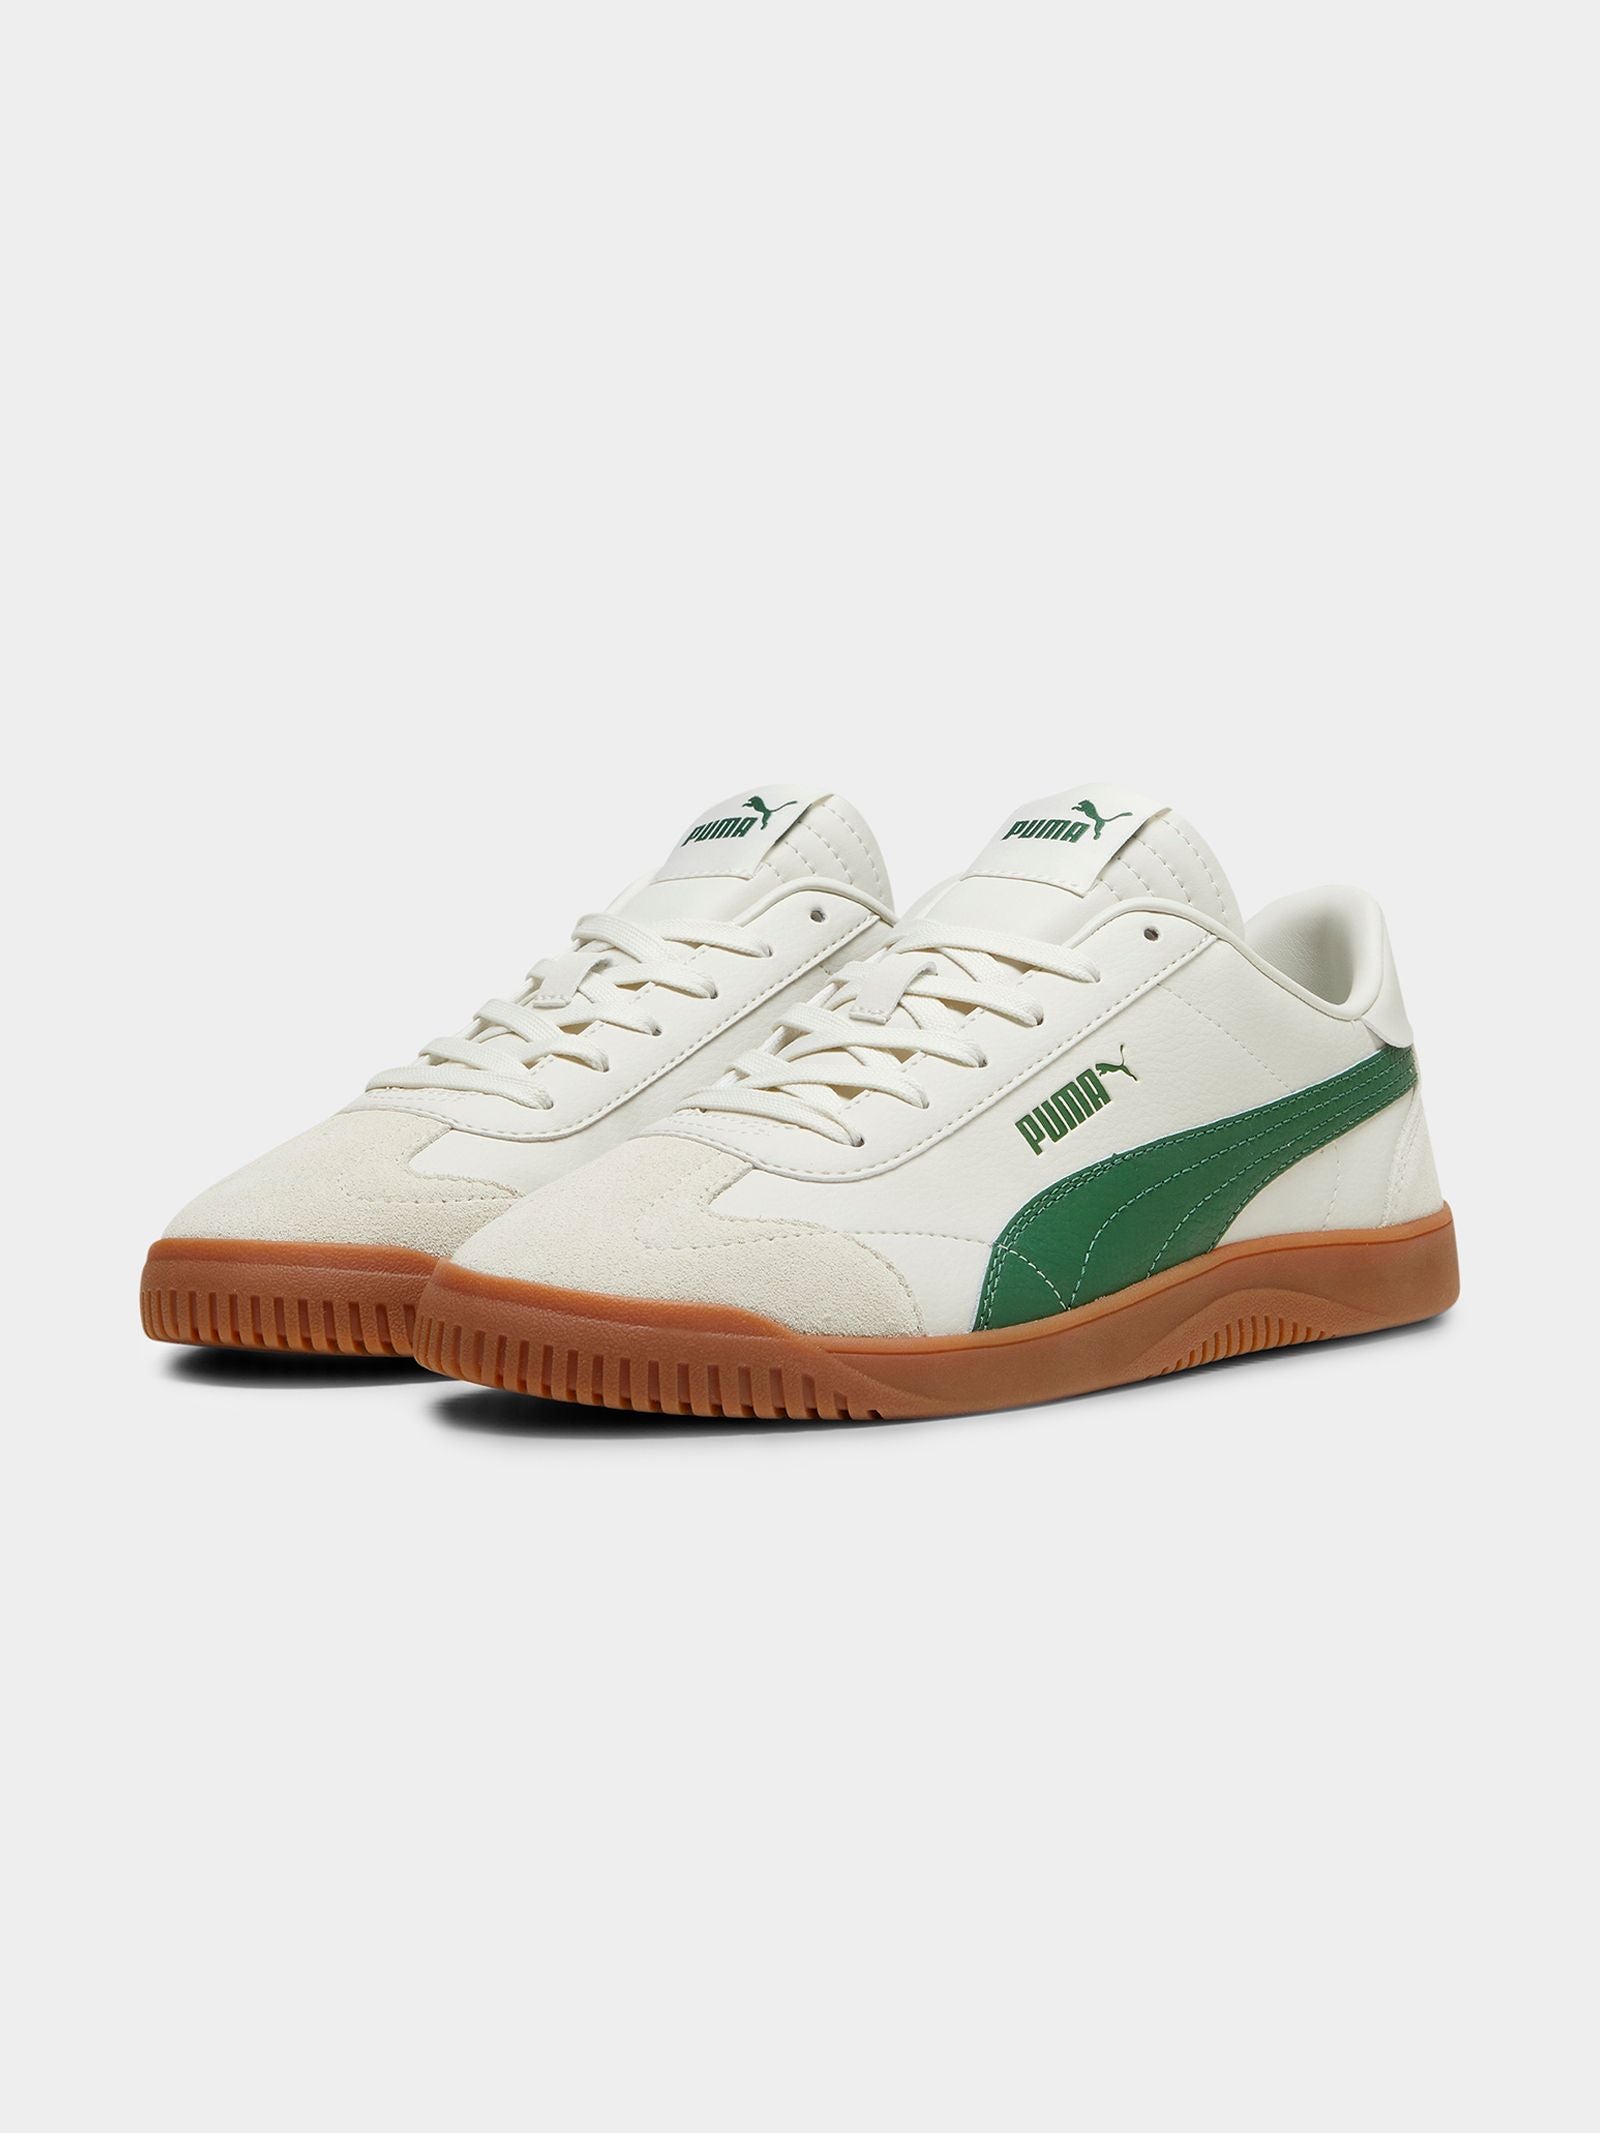 Unisex Club 5v5 SD Sneaker in Vapor Grey & Archive Green